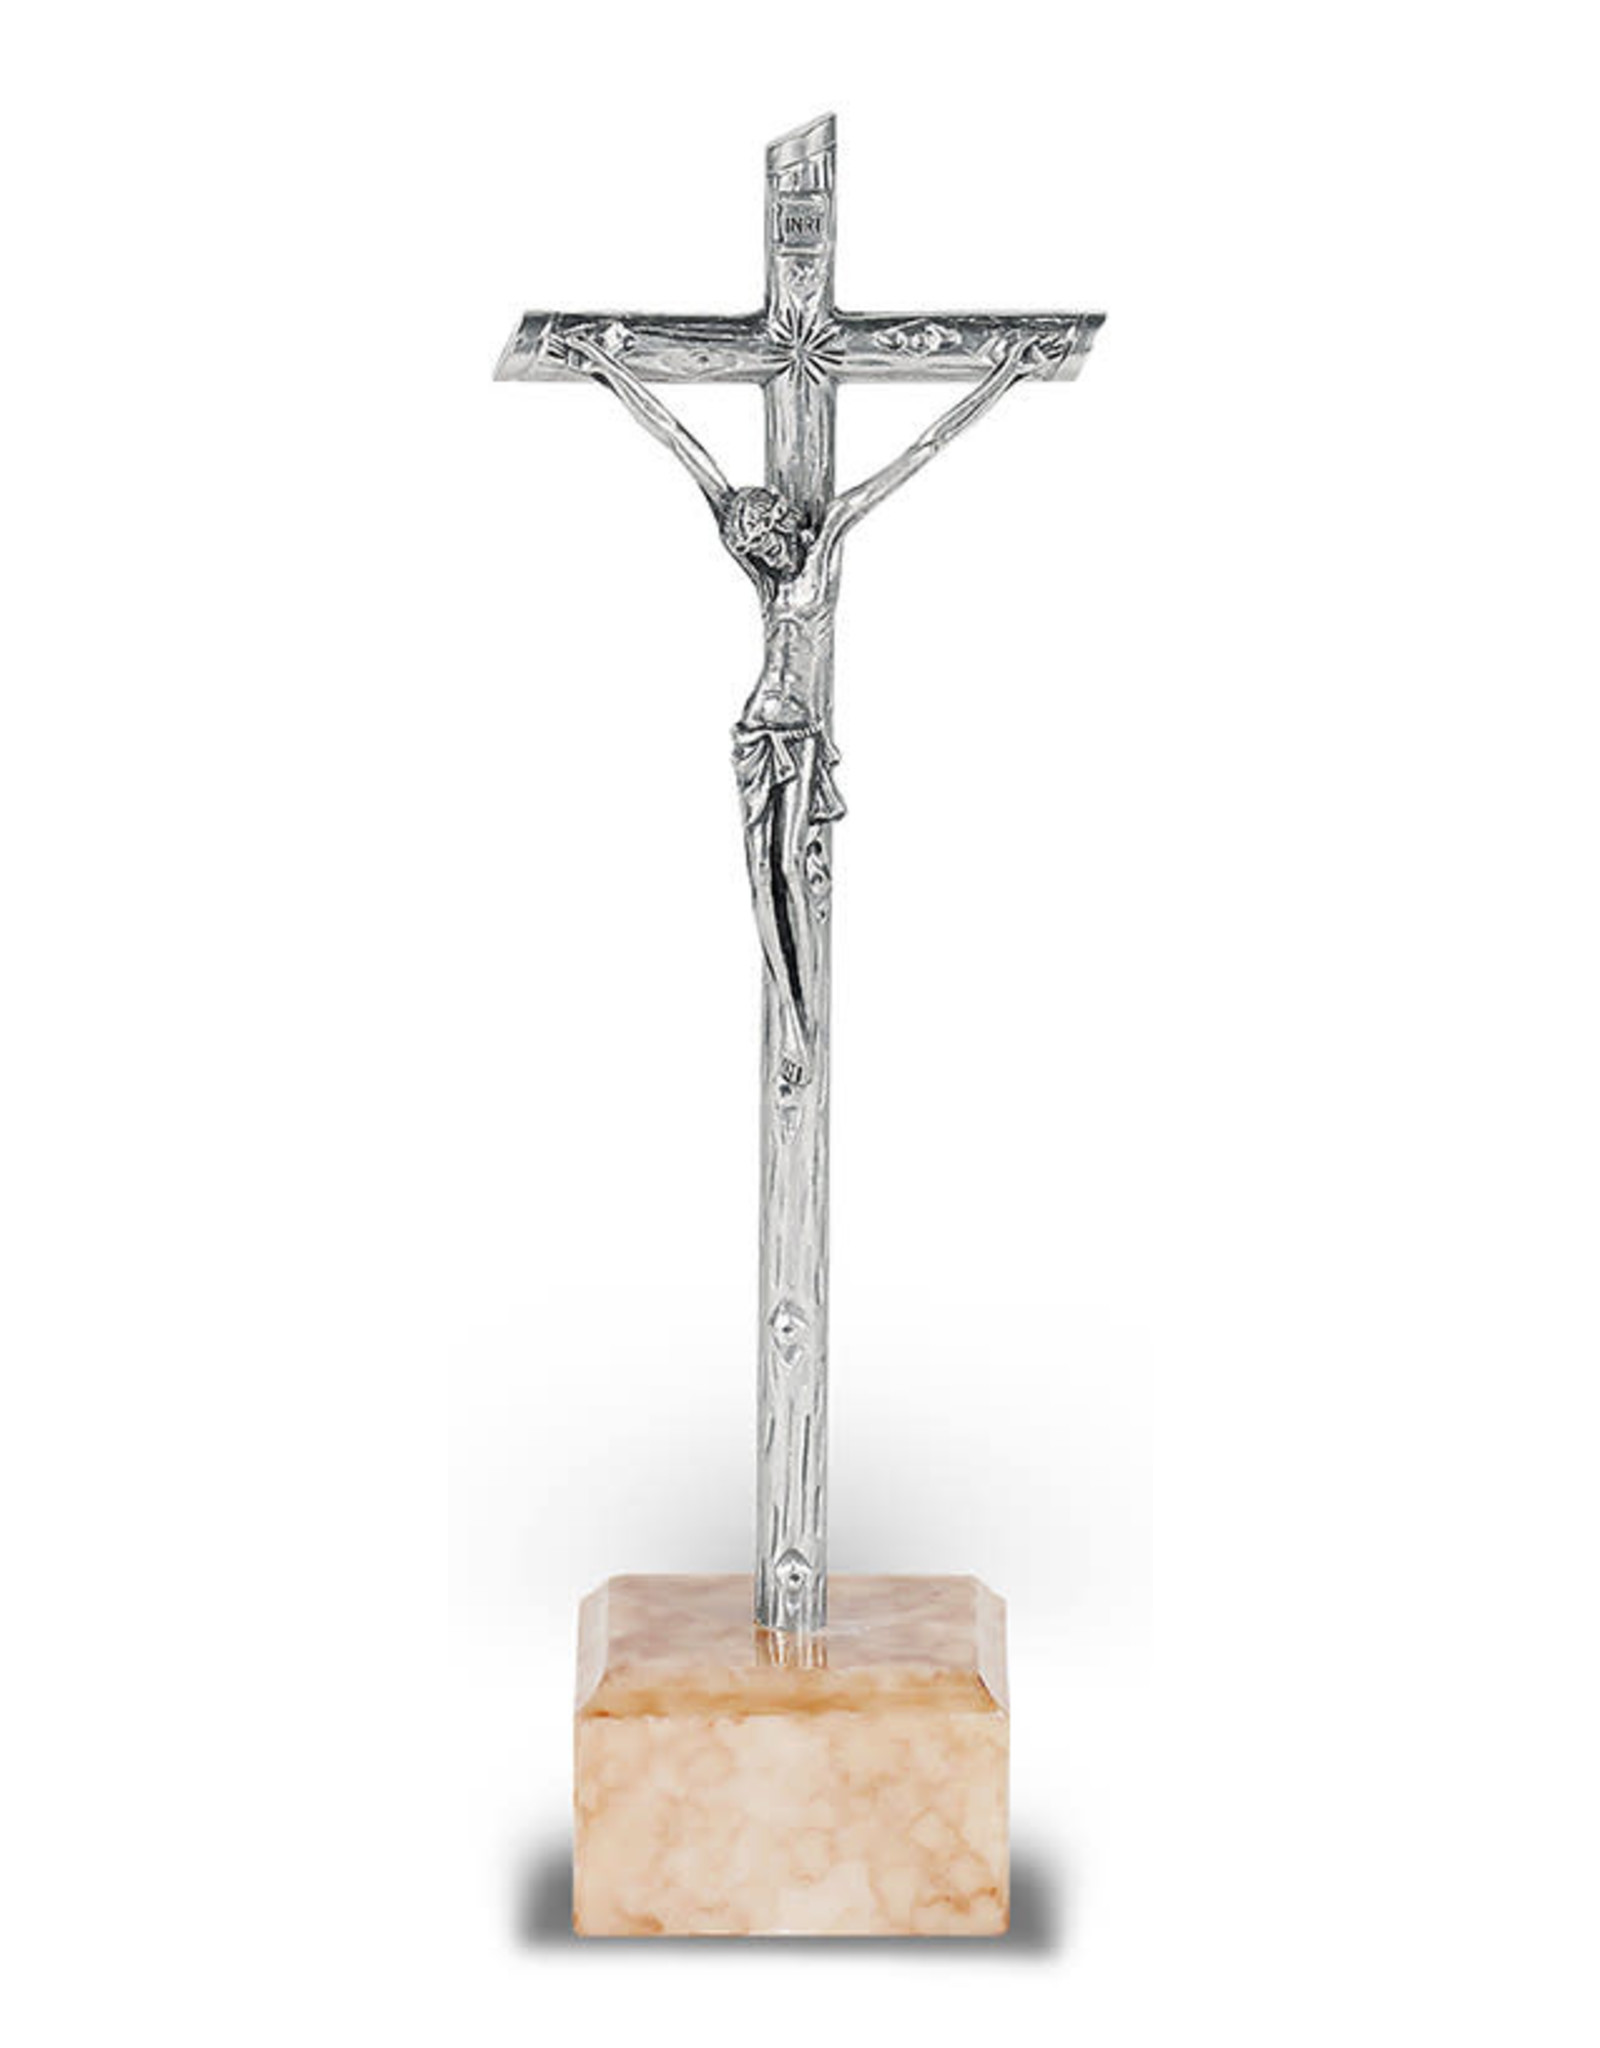 Hirten Standing Crucifix 5" Silver Marble Base